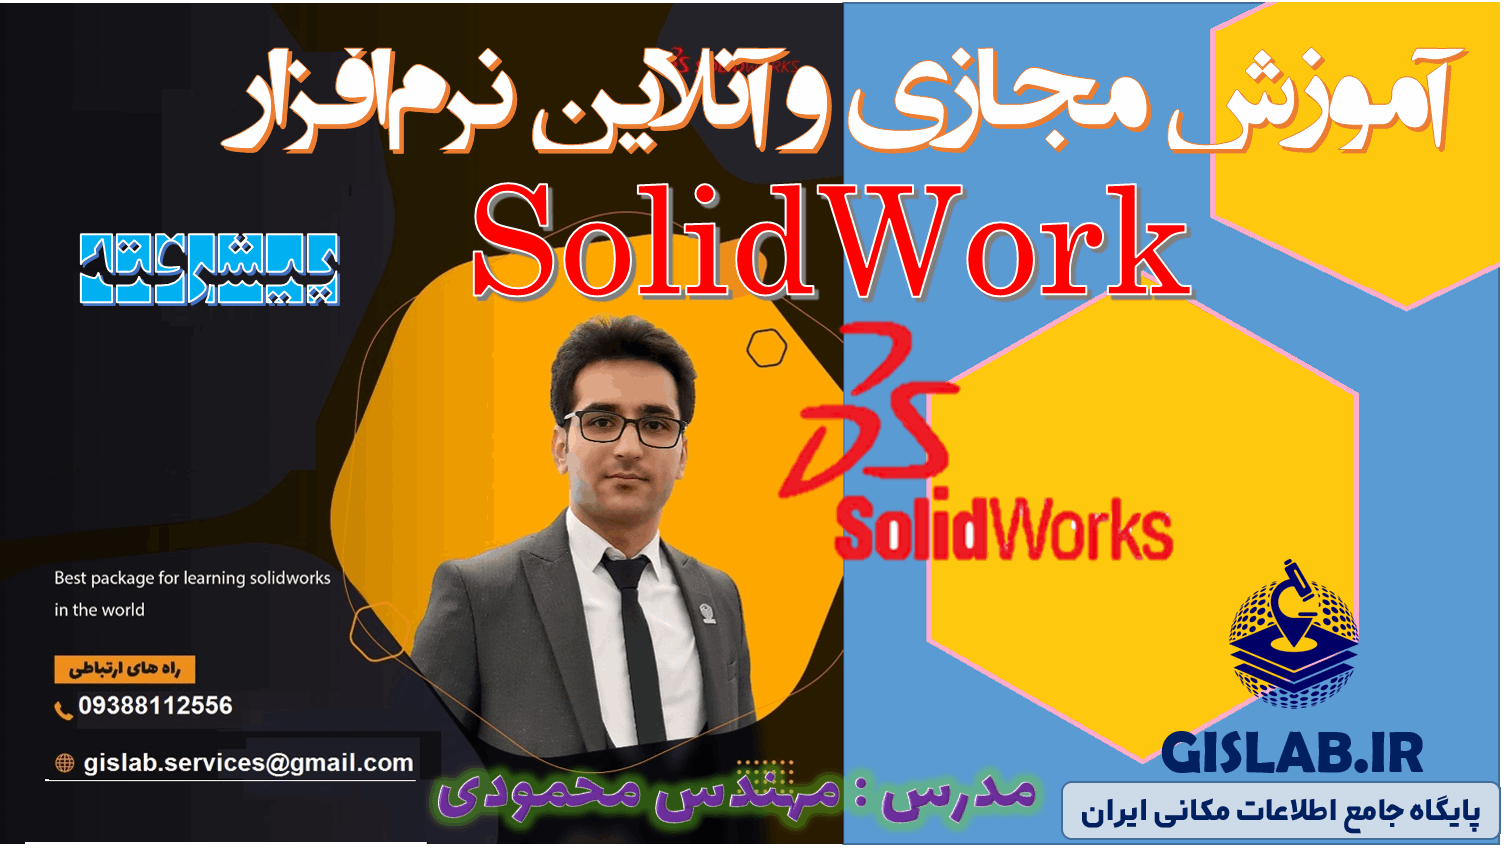 آموزش مجازی و آنلاین نرم افزار SolidWork پیشرفته